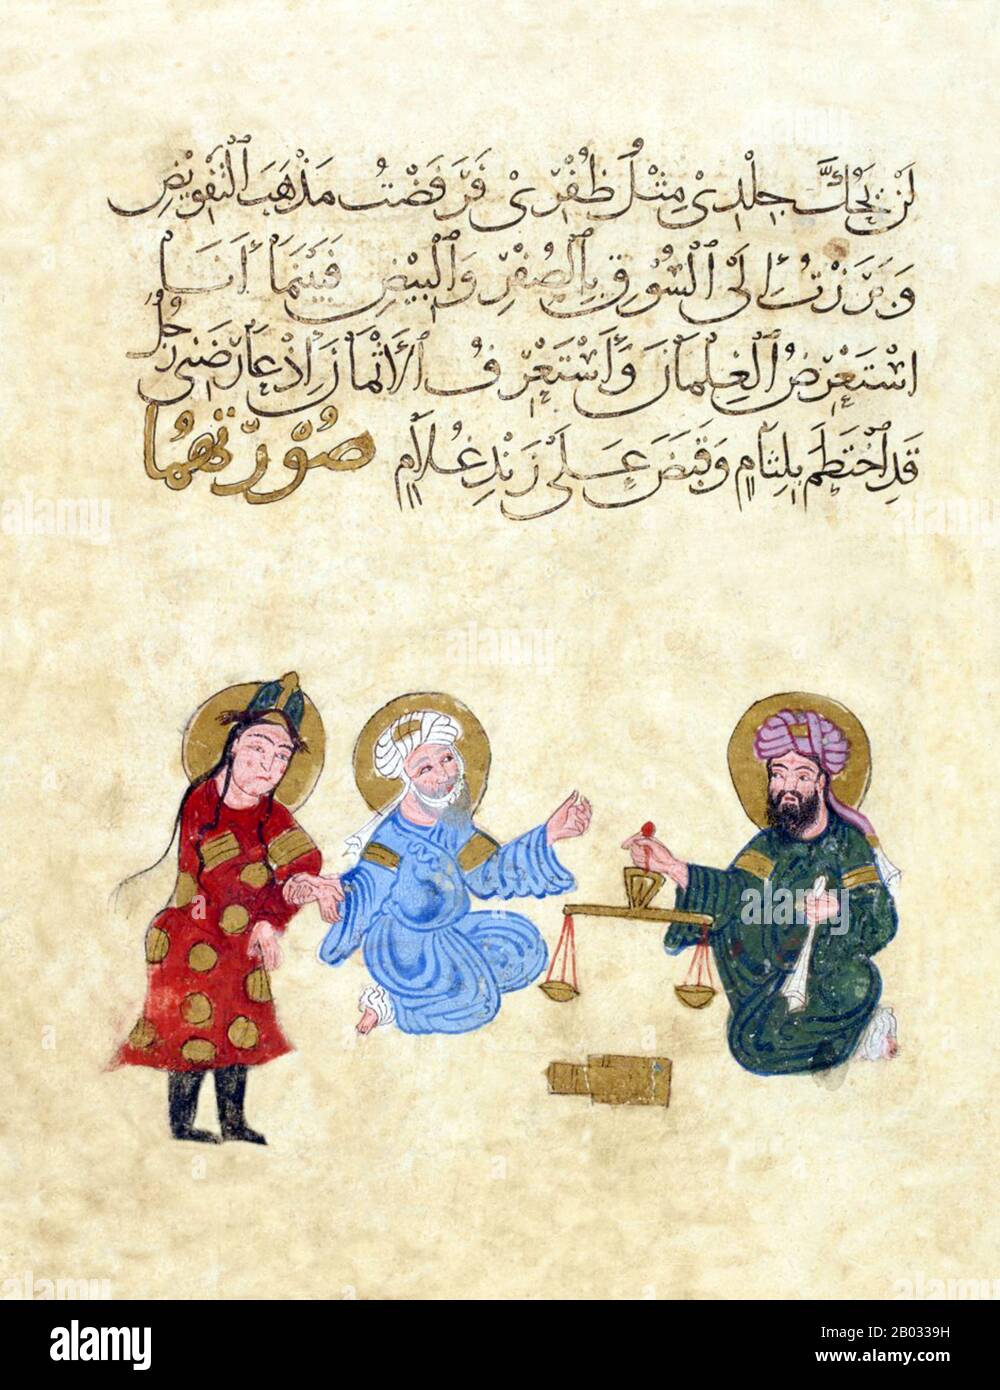 I ‘Maqama’ sono una raccolta di picaresque racconti arabi scritti in forma di prosa riminata in cui è evidente la stravaganza retorica. Lo stile fu inventato nel 10th secolo da Badi al-Zaman al-Hamadhani e ampliato da Abu Muhammed al-Qasim ibn Ali al-Hariri di Bassora nel secolo successivo. I protagonisti delle storie sono sempre marchette argentate, in particolare il roguish Abu Zaid al-Saruji, che ingannano il narratore e che vivono sulle loro guglie e abbagliano gli spettatori con mostre di acrobazie, recitando e recitando poesia. Foto Stock